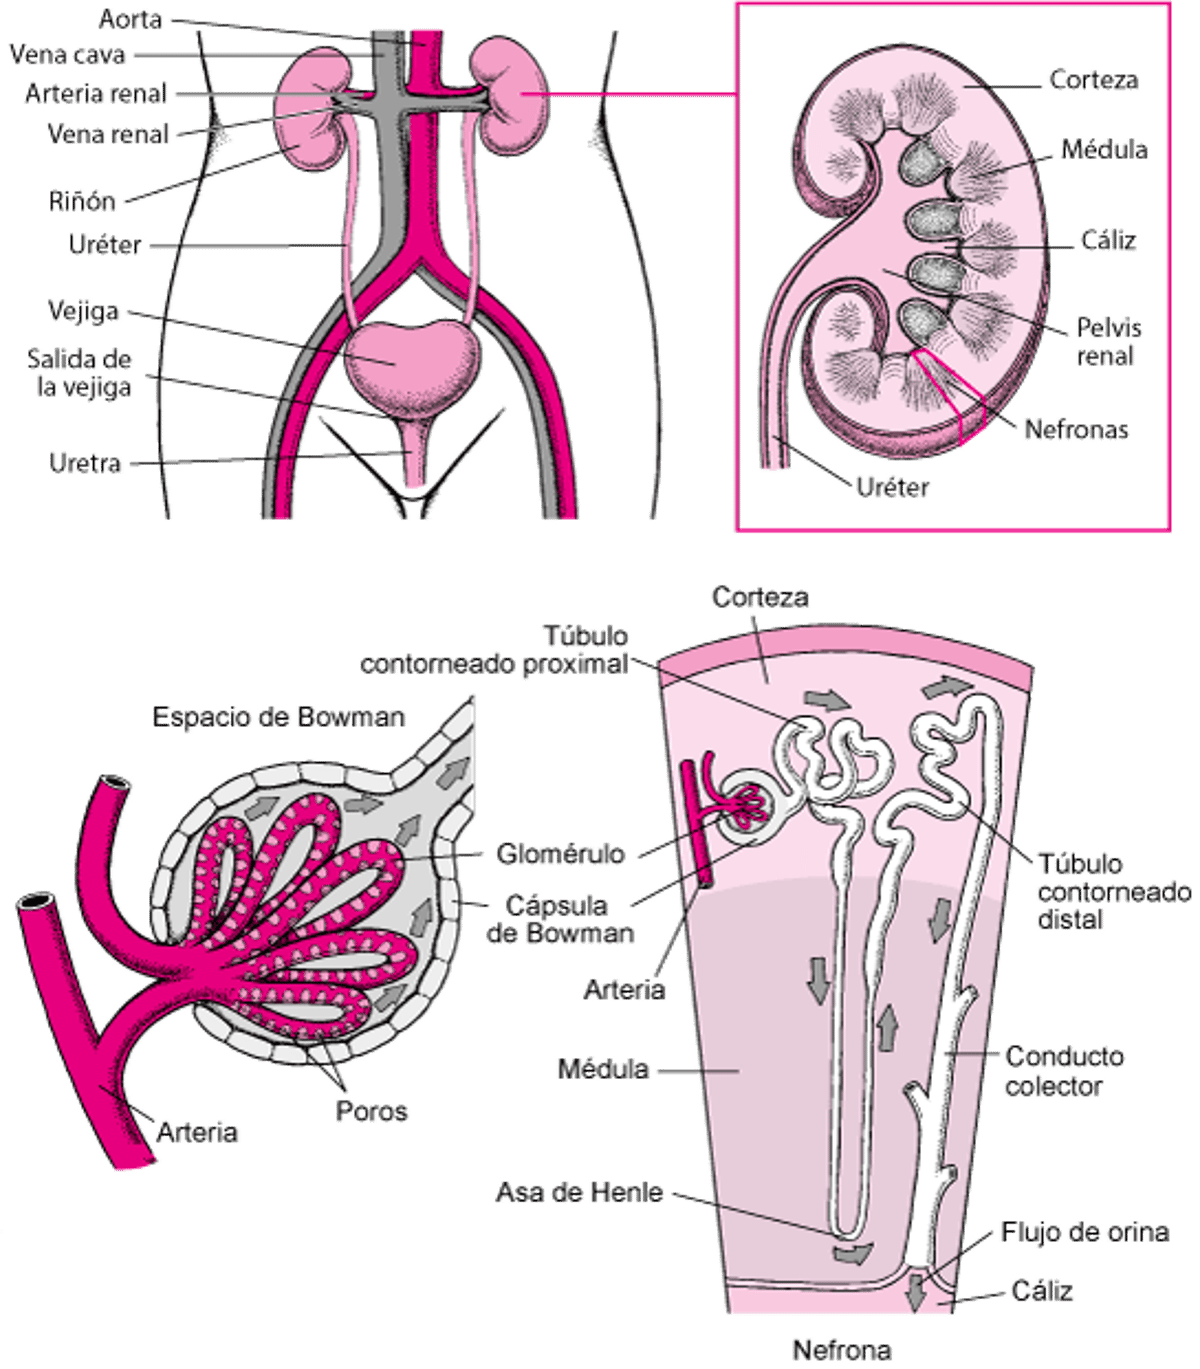 Órganos de las vías urinarias